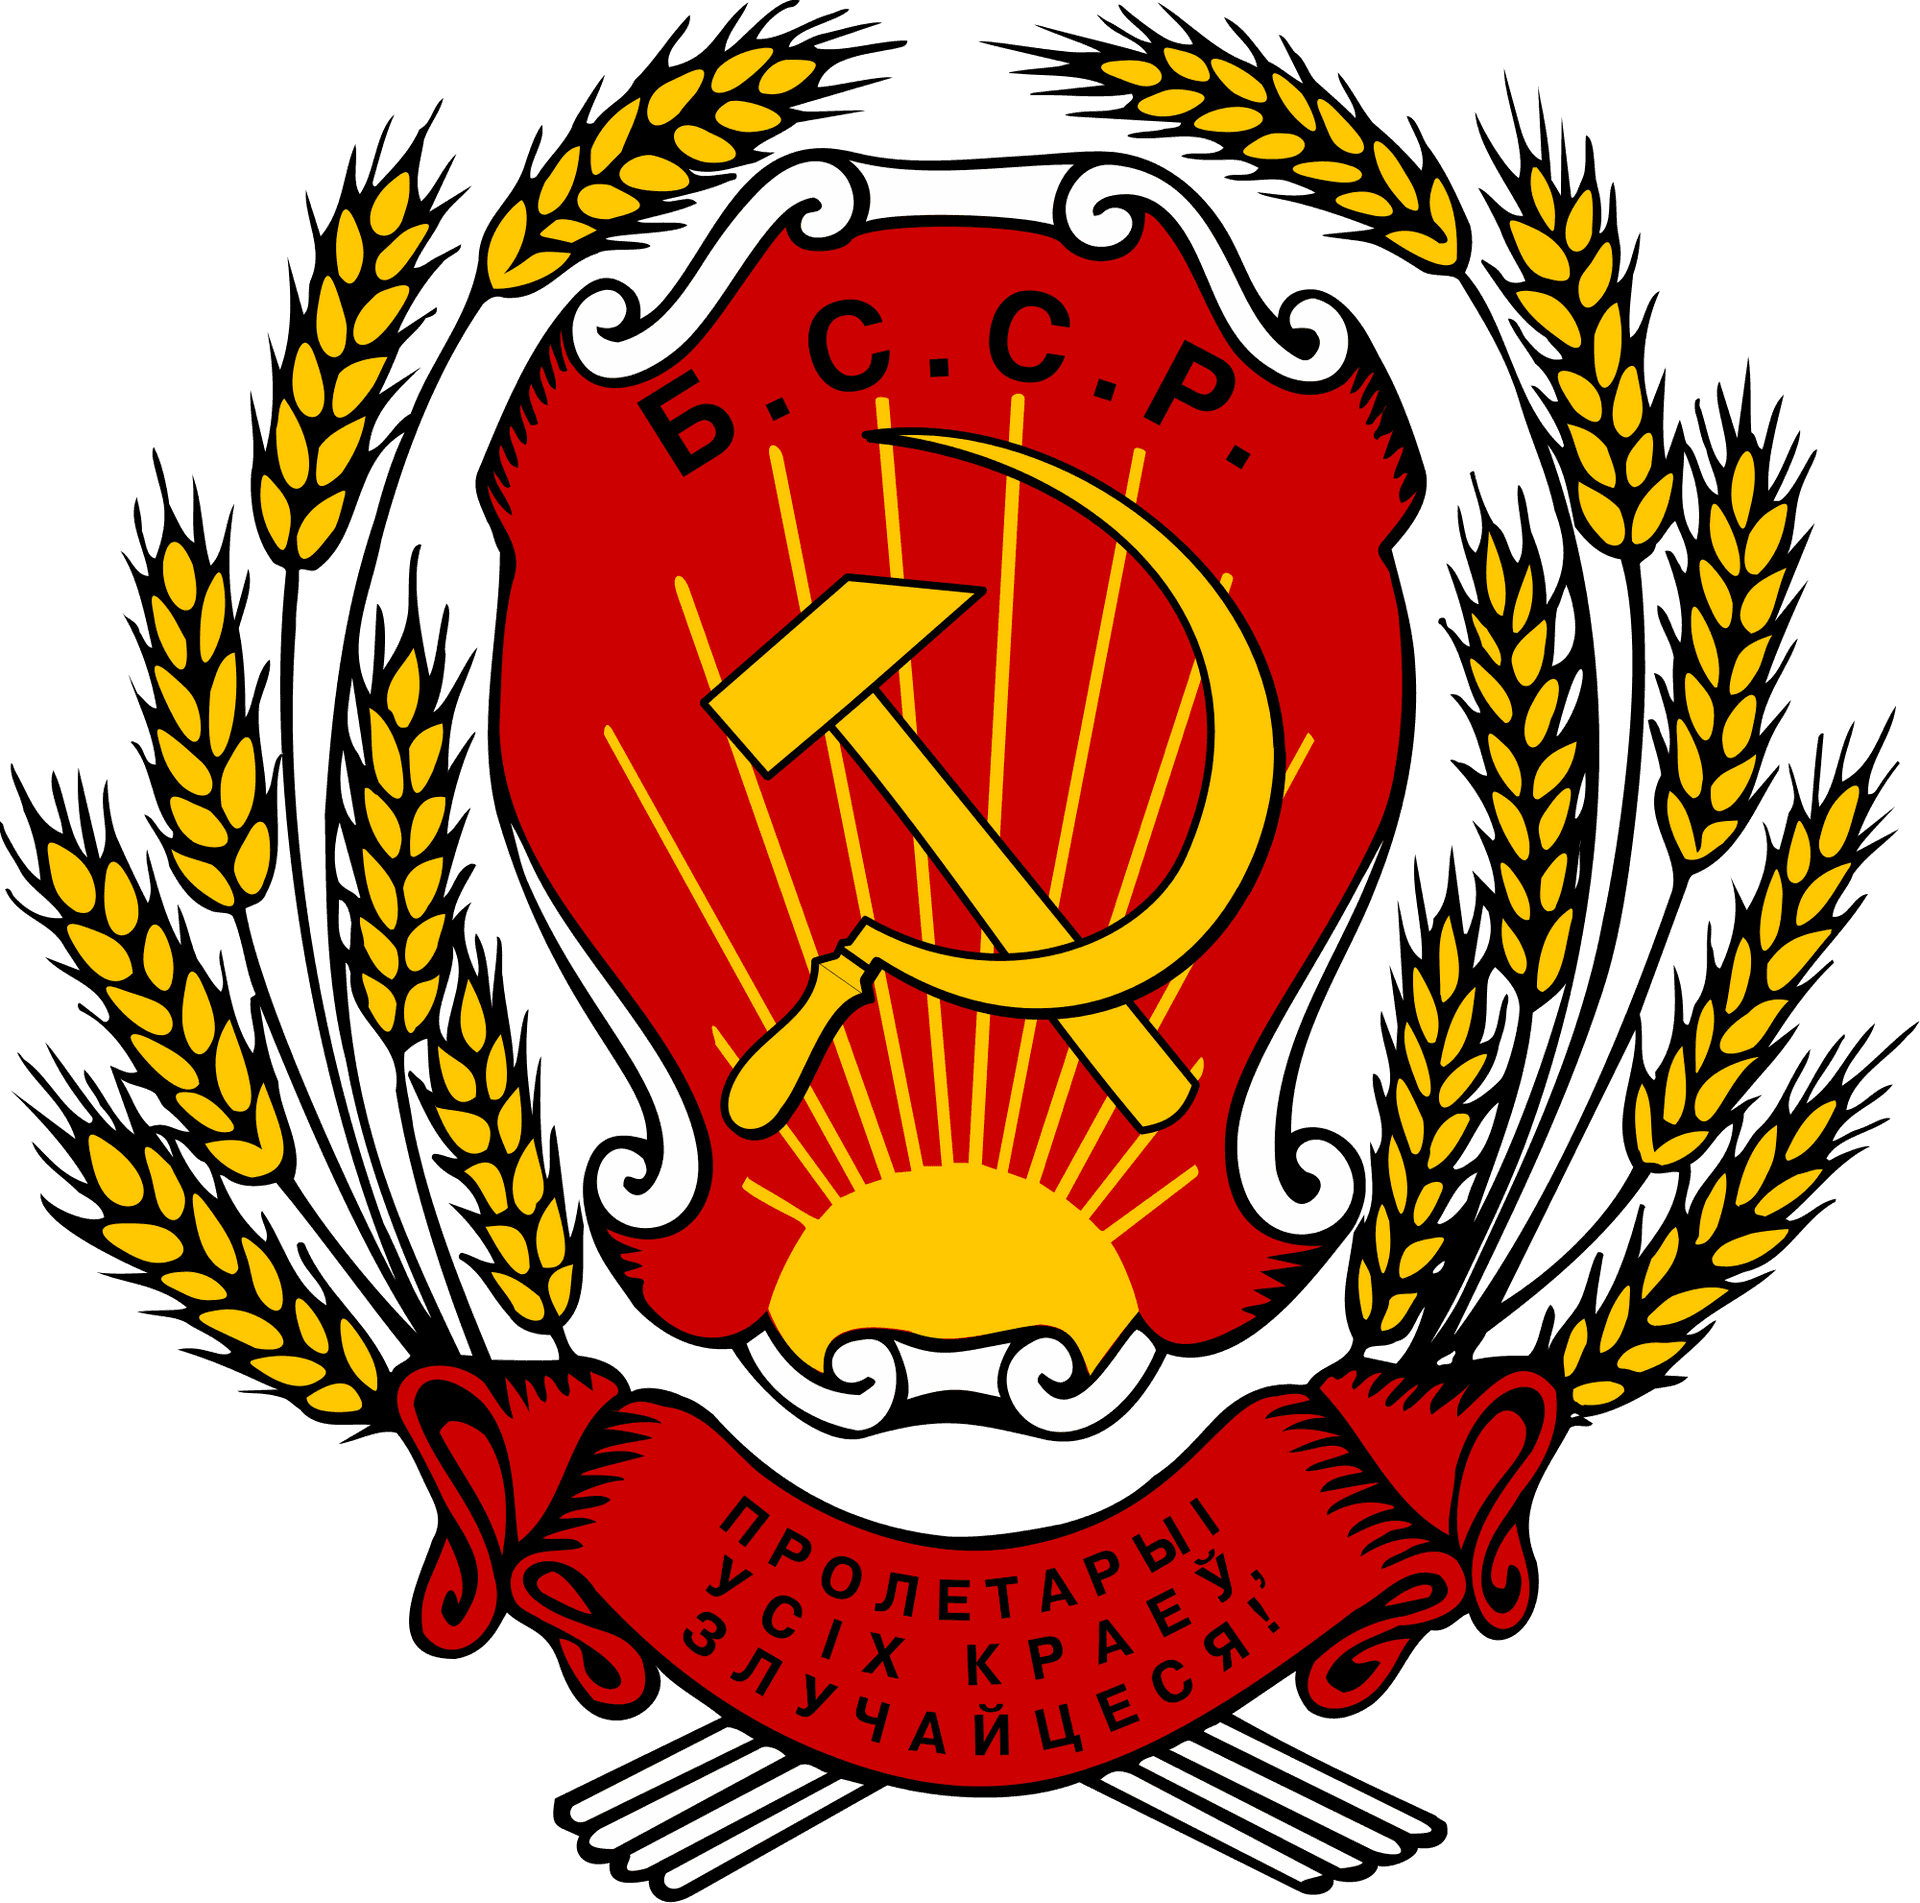 Soviet Belarus Emblem PNG image